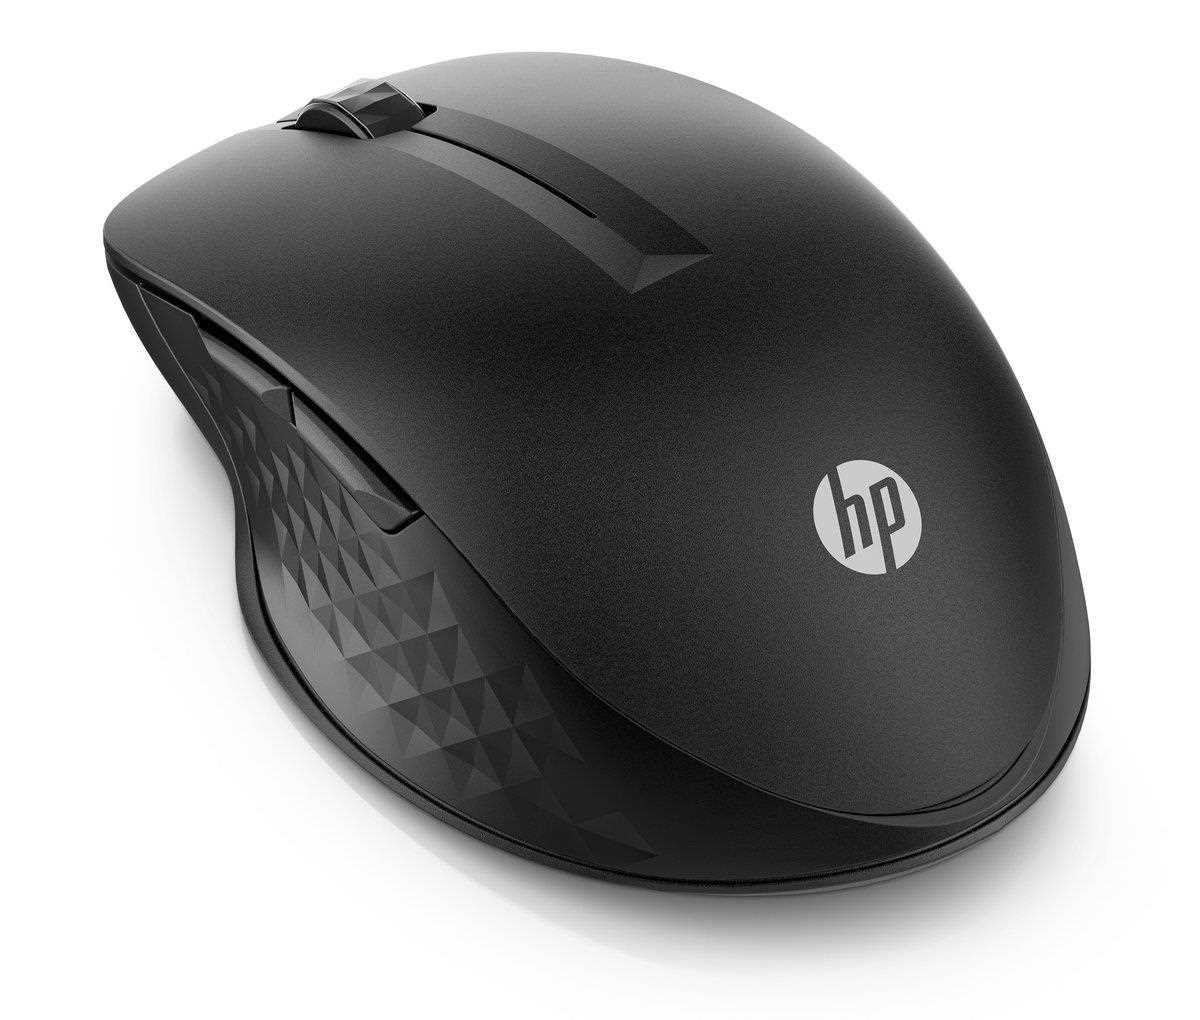 HP 430 Multi-Device Mouse EURO,  bezdrôtová - bezdrôtová myš3 